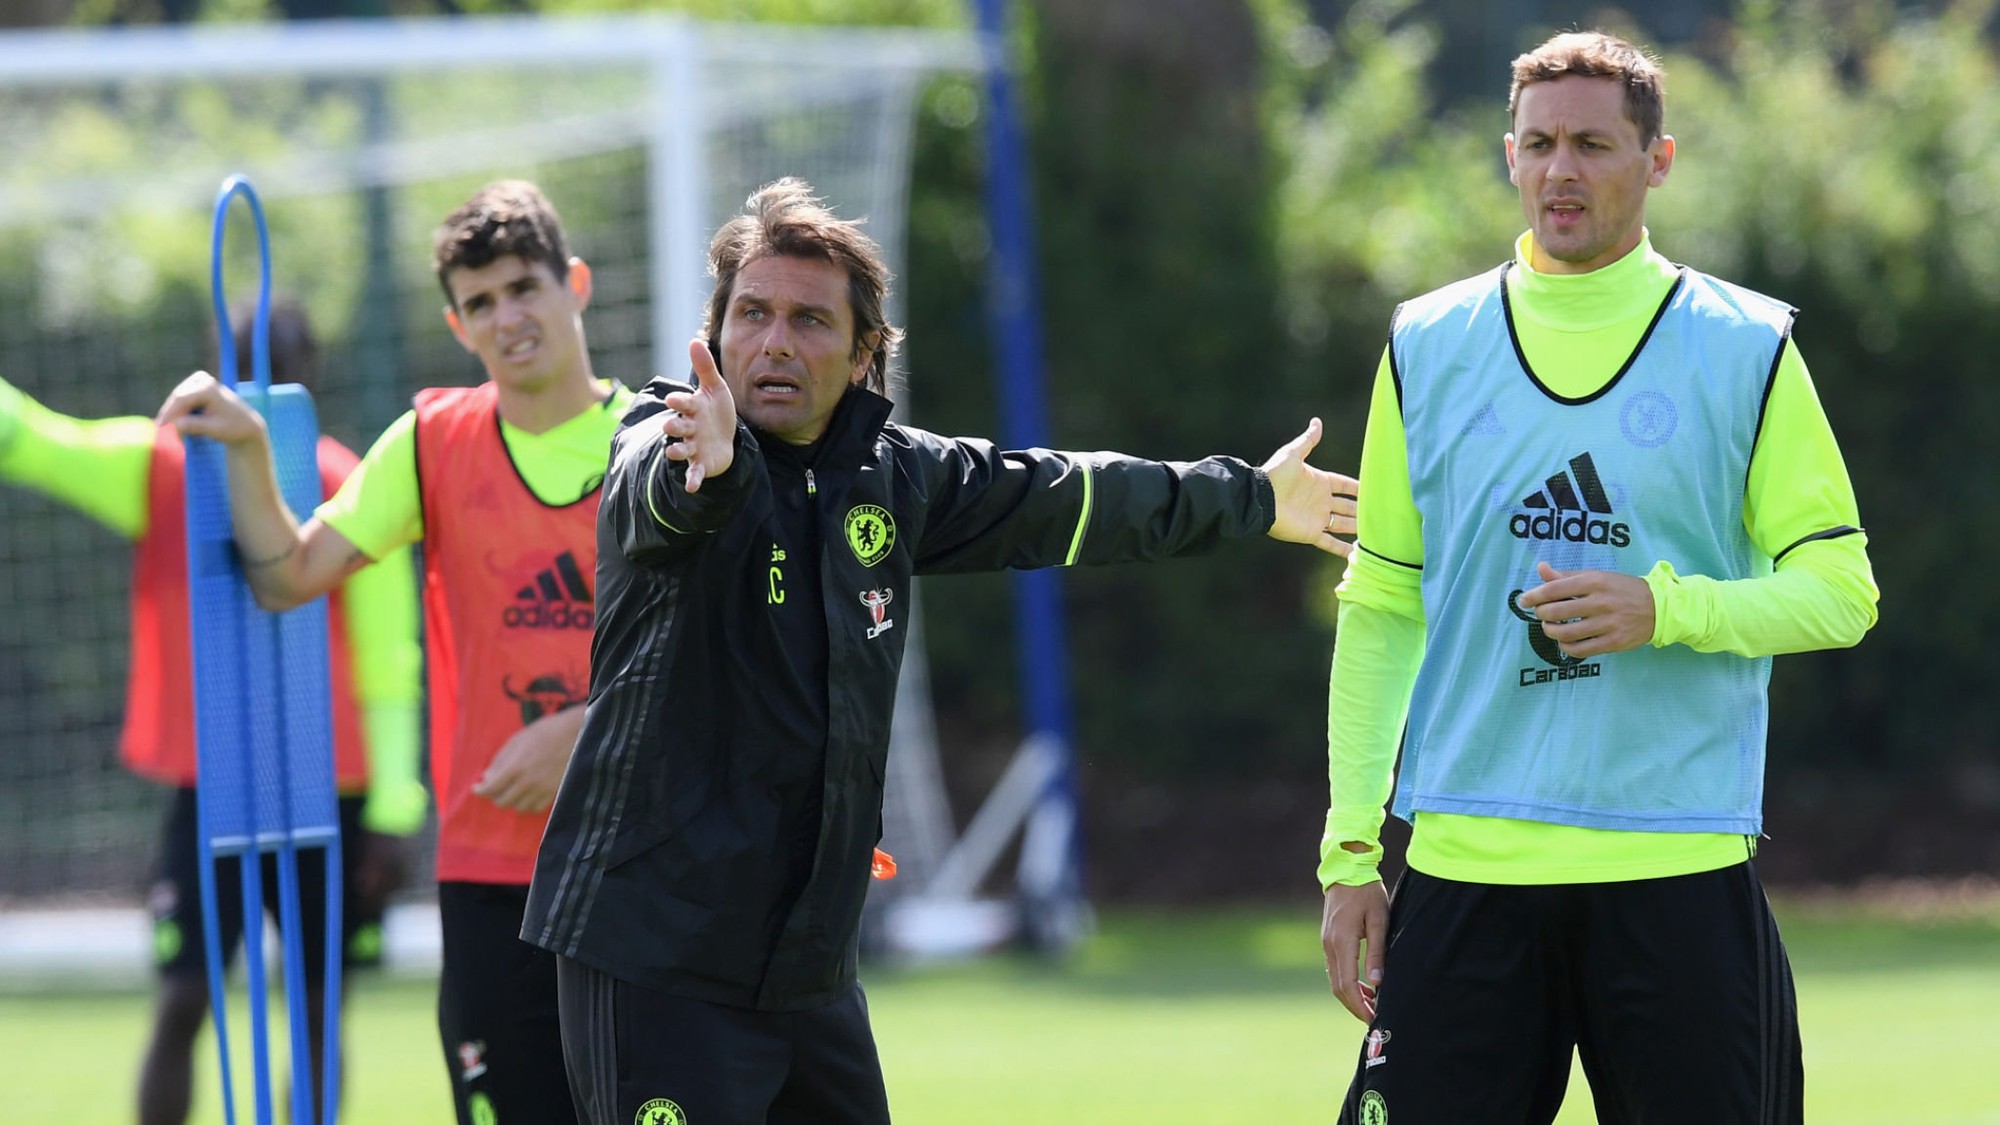 HLV Antonio Conte đã chuẩn bị vô cùng kỹ lưỡng cho Chelsea trước mùa giải 2016/17